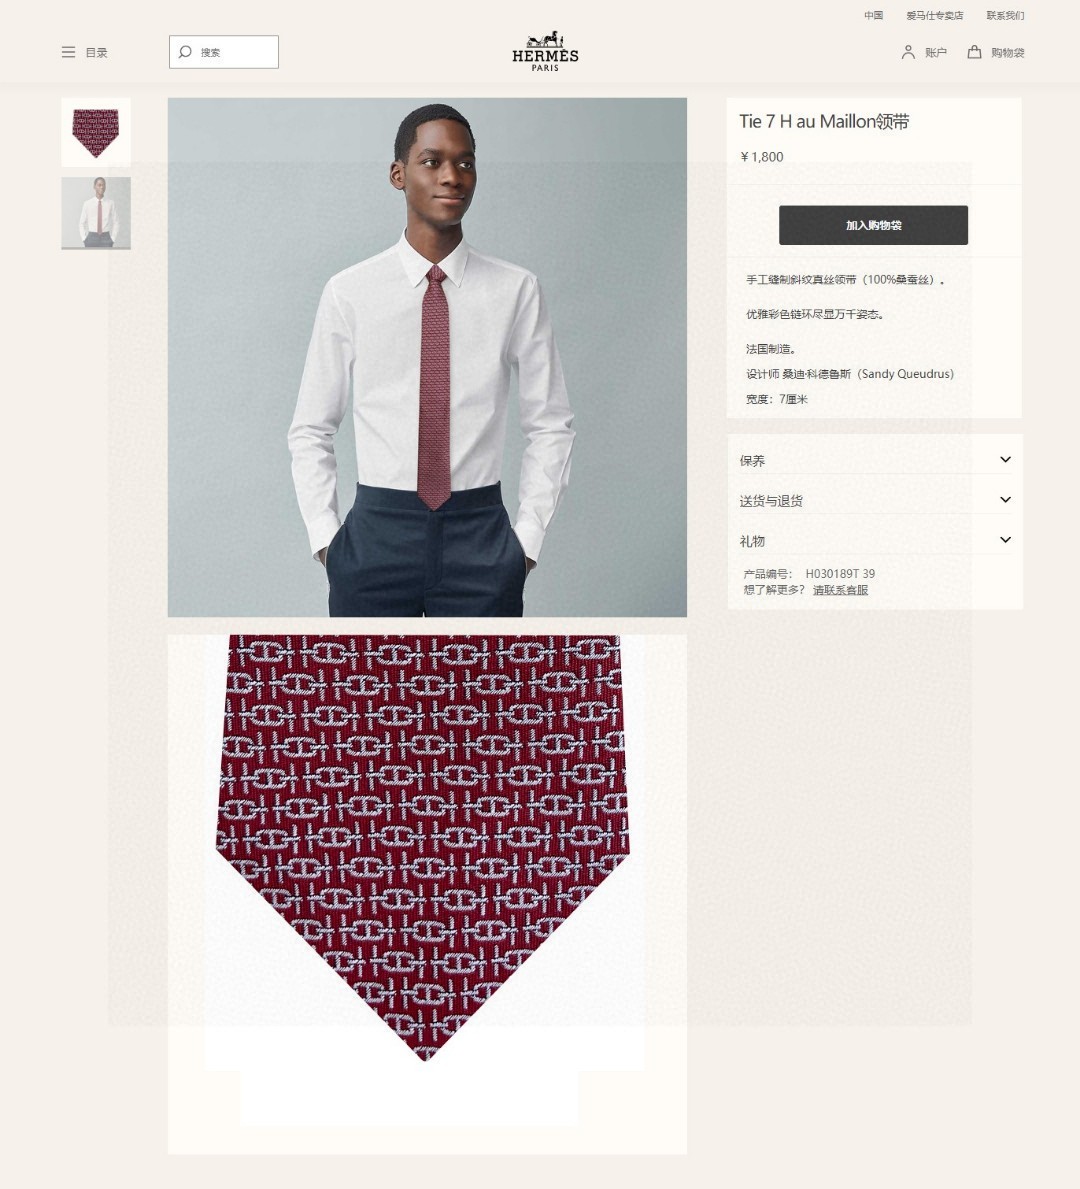 特价男士新款领带系列H新型链条领带稀有H家每年都有一千条不同印花的领带面世从最初的多以几何图案表现骑术活